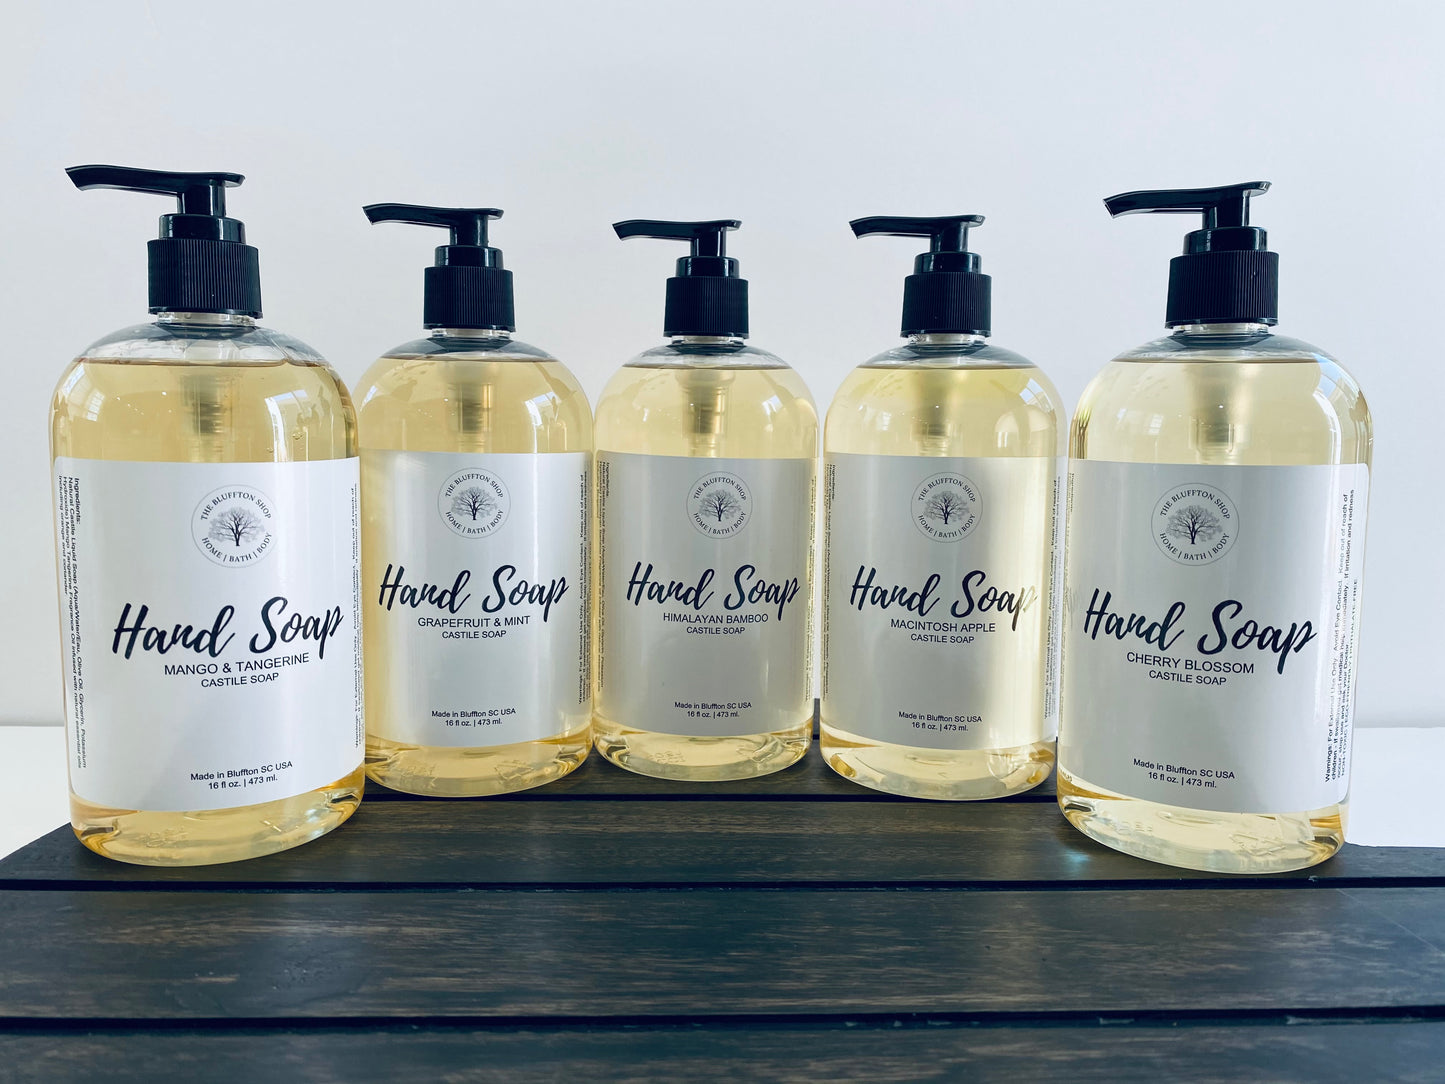 Castile Hand Soap | Grapefruit & Mint | The Bluffton Shop